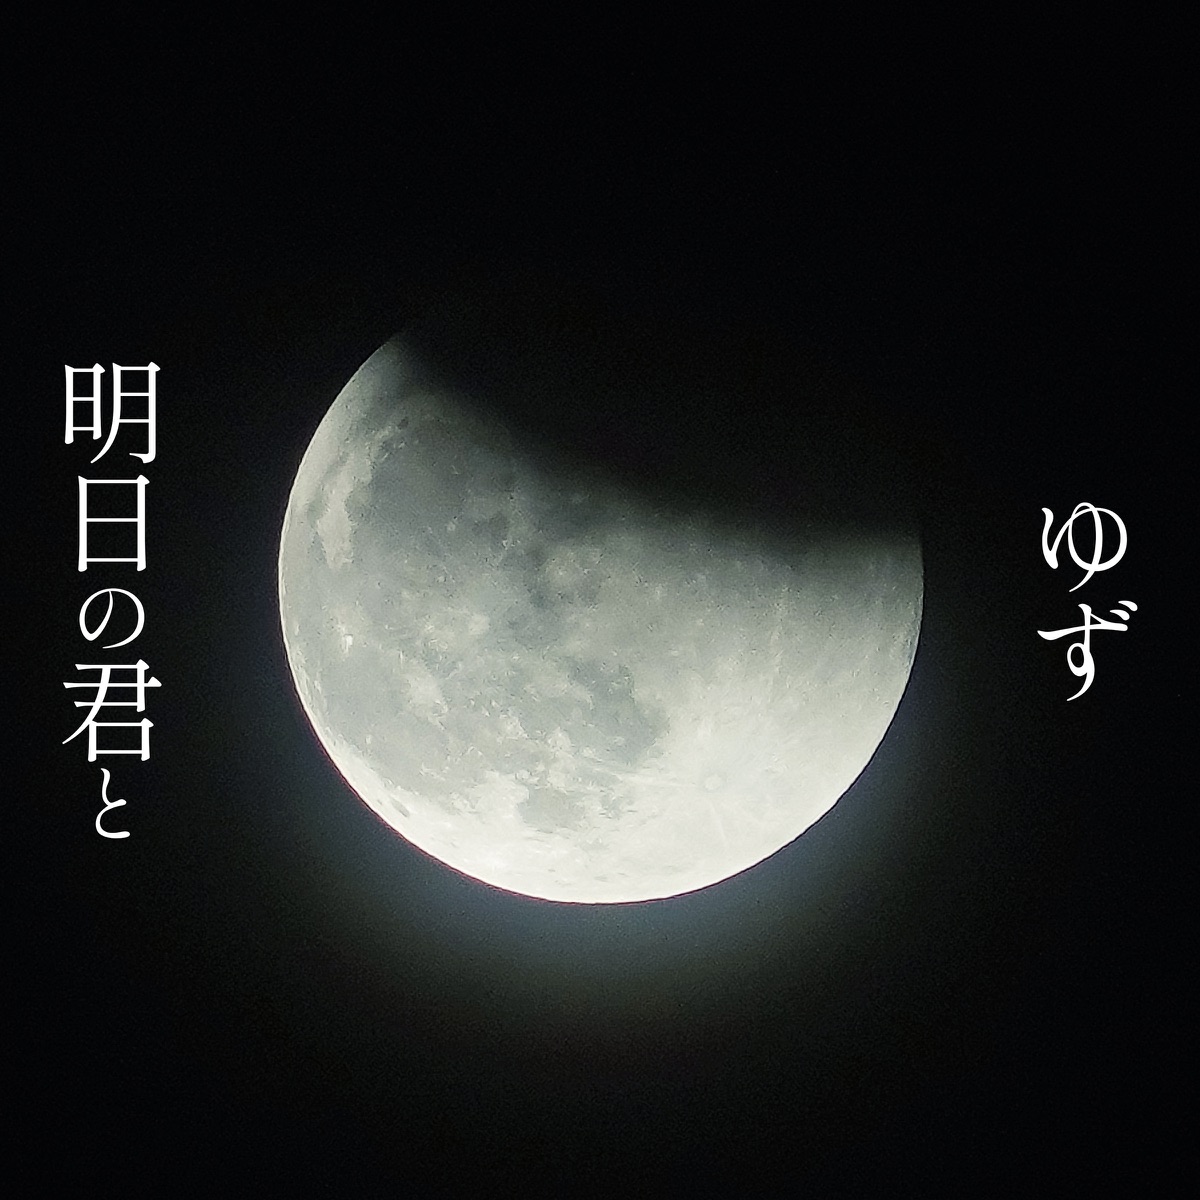 Cover art for『YUZU - Ashita no Kimi to』from the release『Ashita no Kimi to』